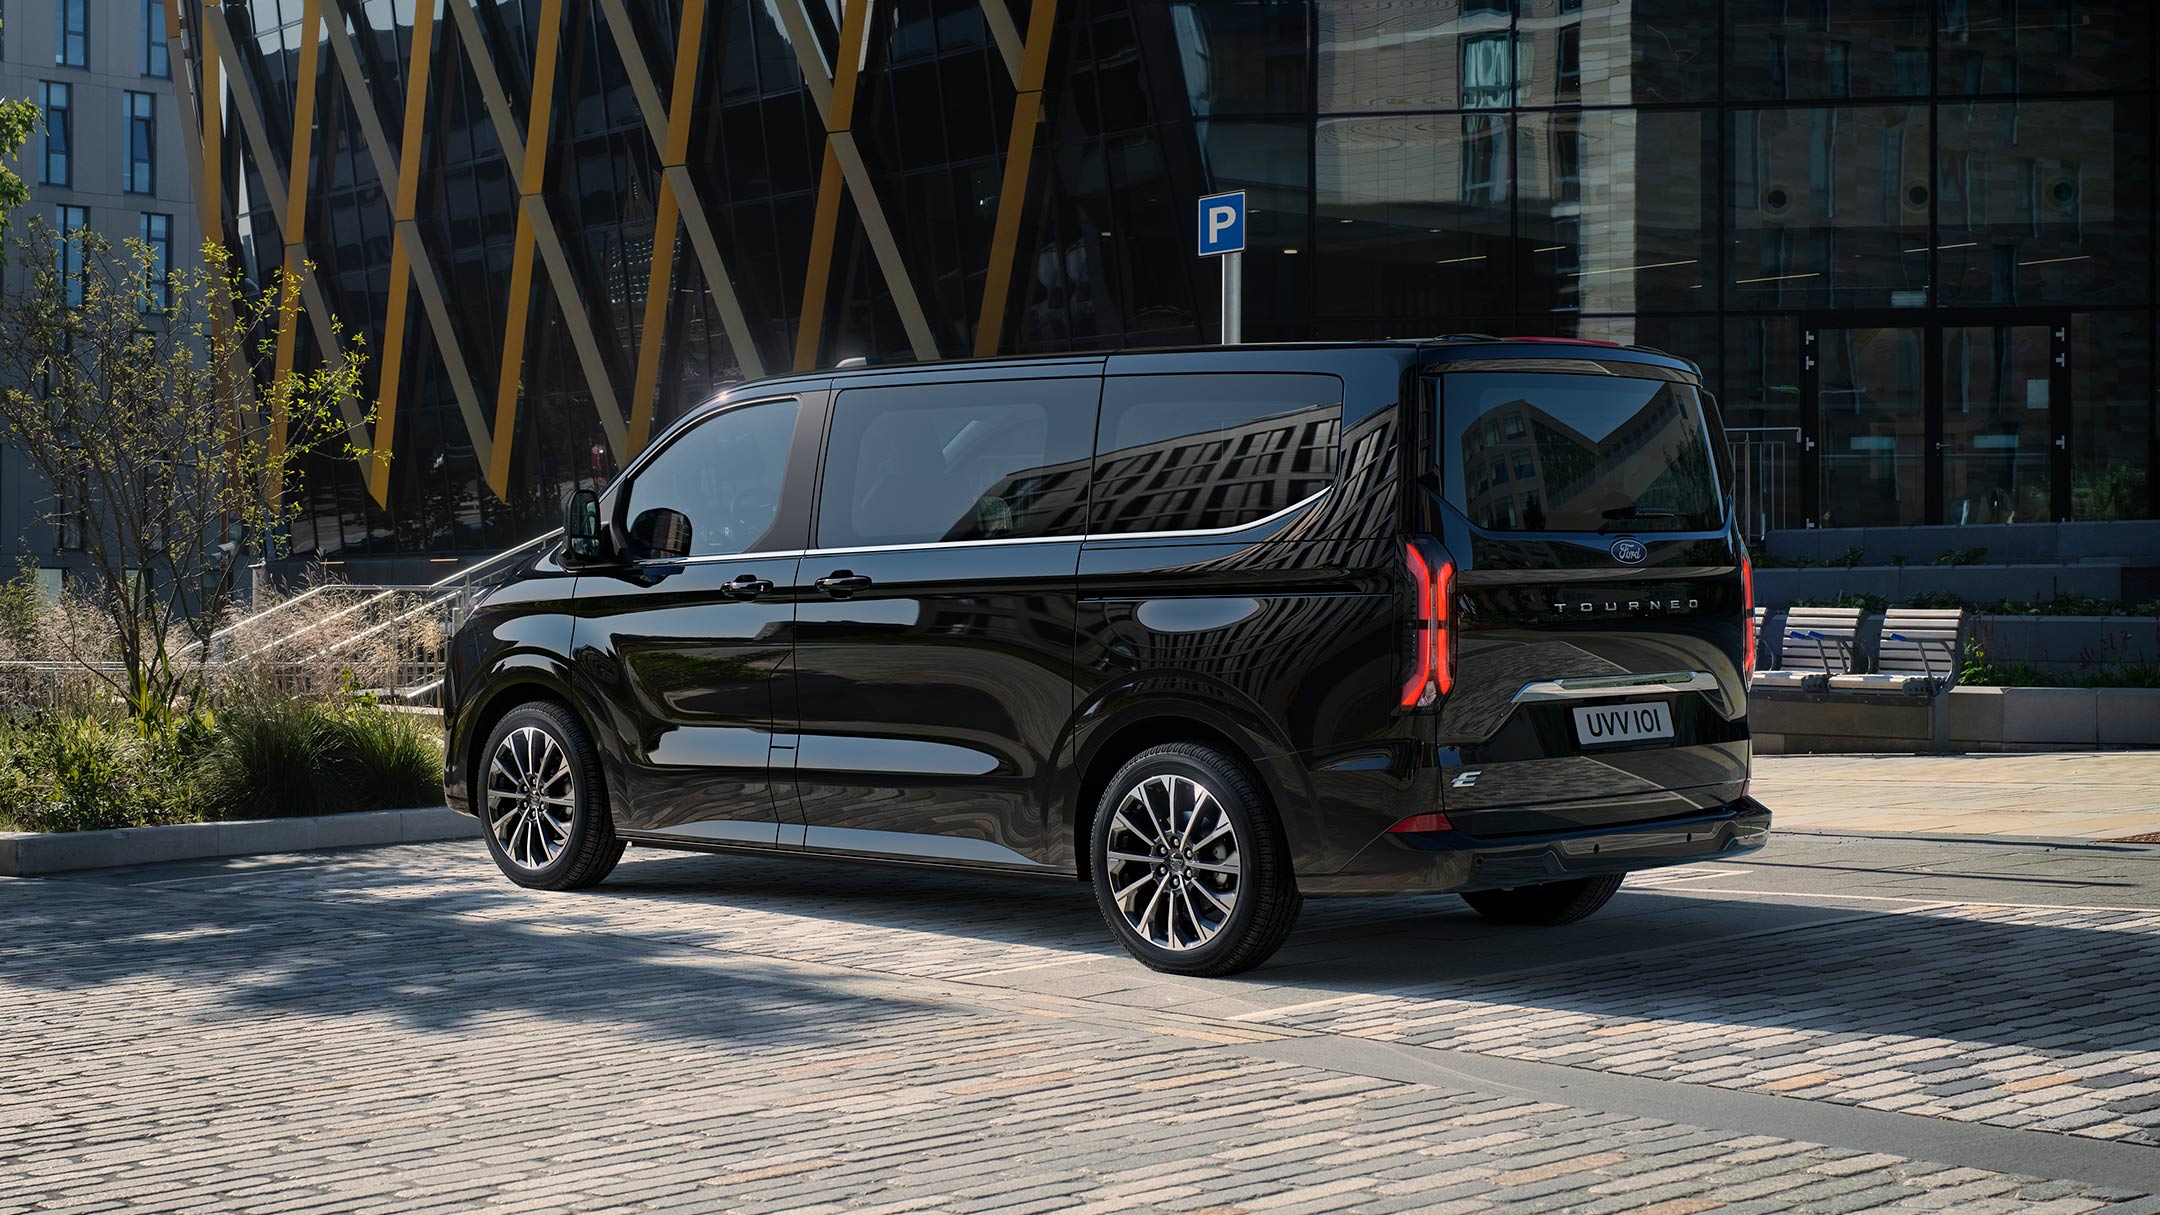 Ford Tourneo Custom in Schwarz in  der ¾-Heckansicht geparkt auf einem Parkplatz vor modernen Gebäuden